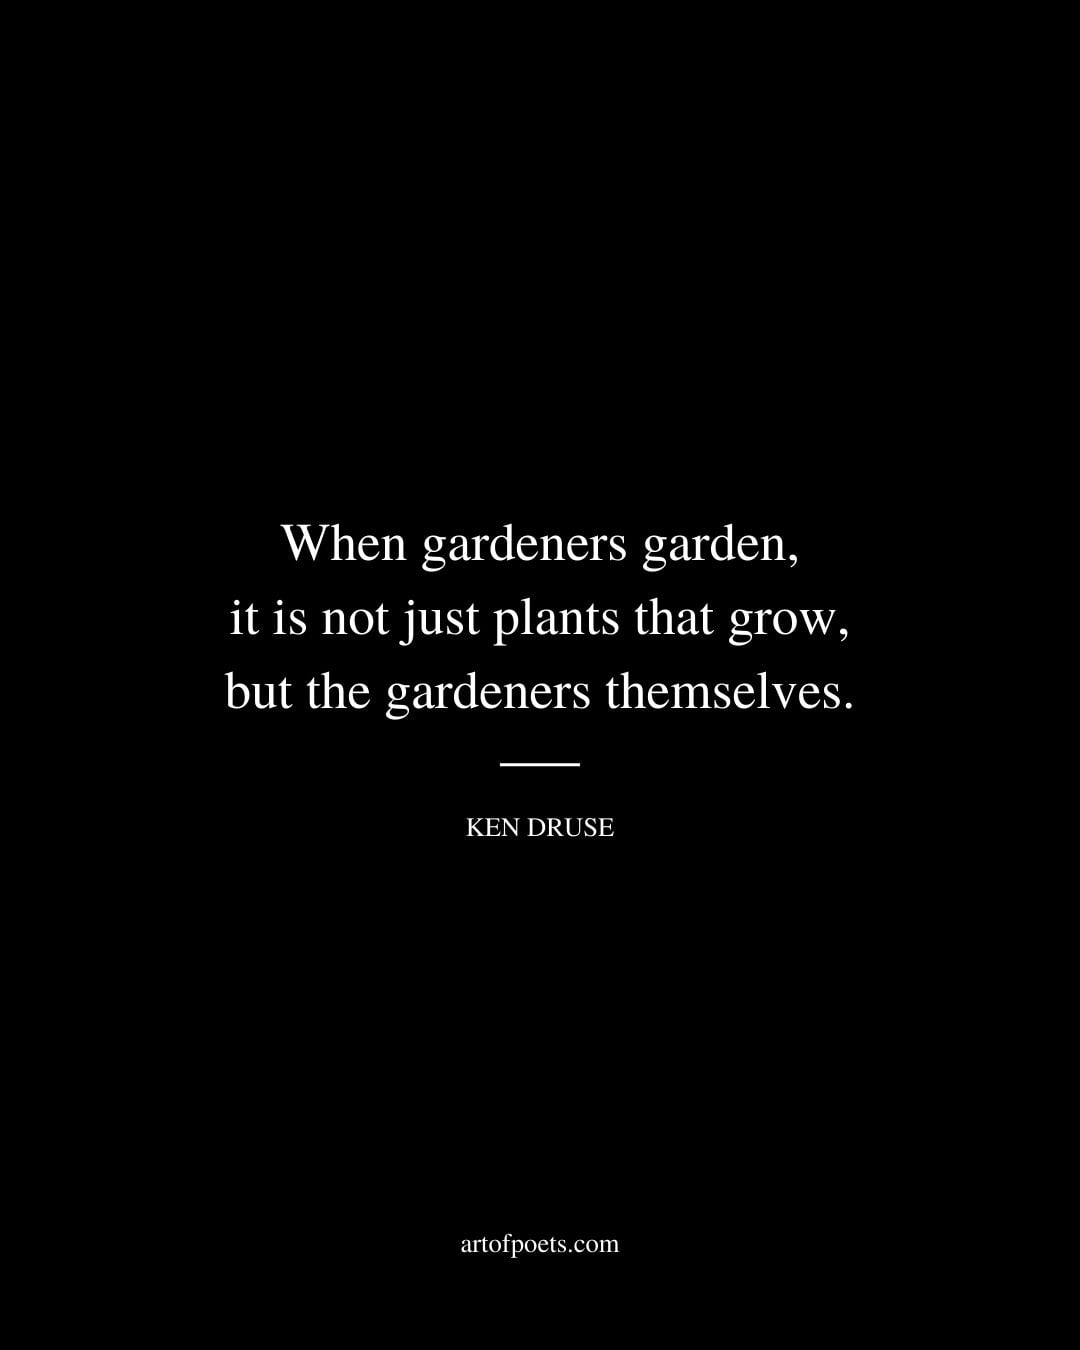 When gardeners garden it is not just plants that grow but the gardeners themselves. Ken Druse